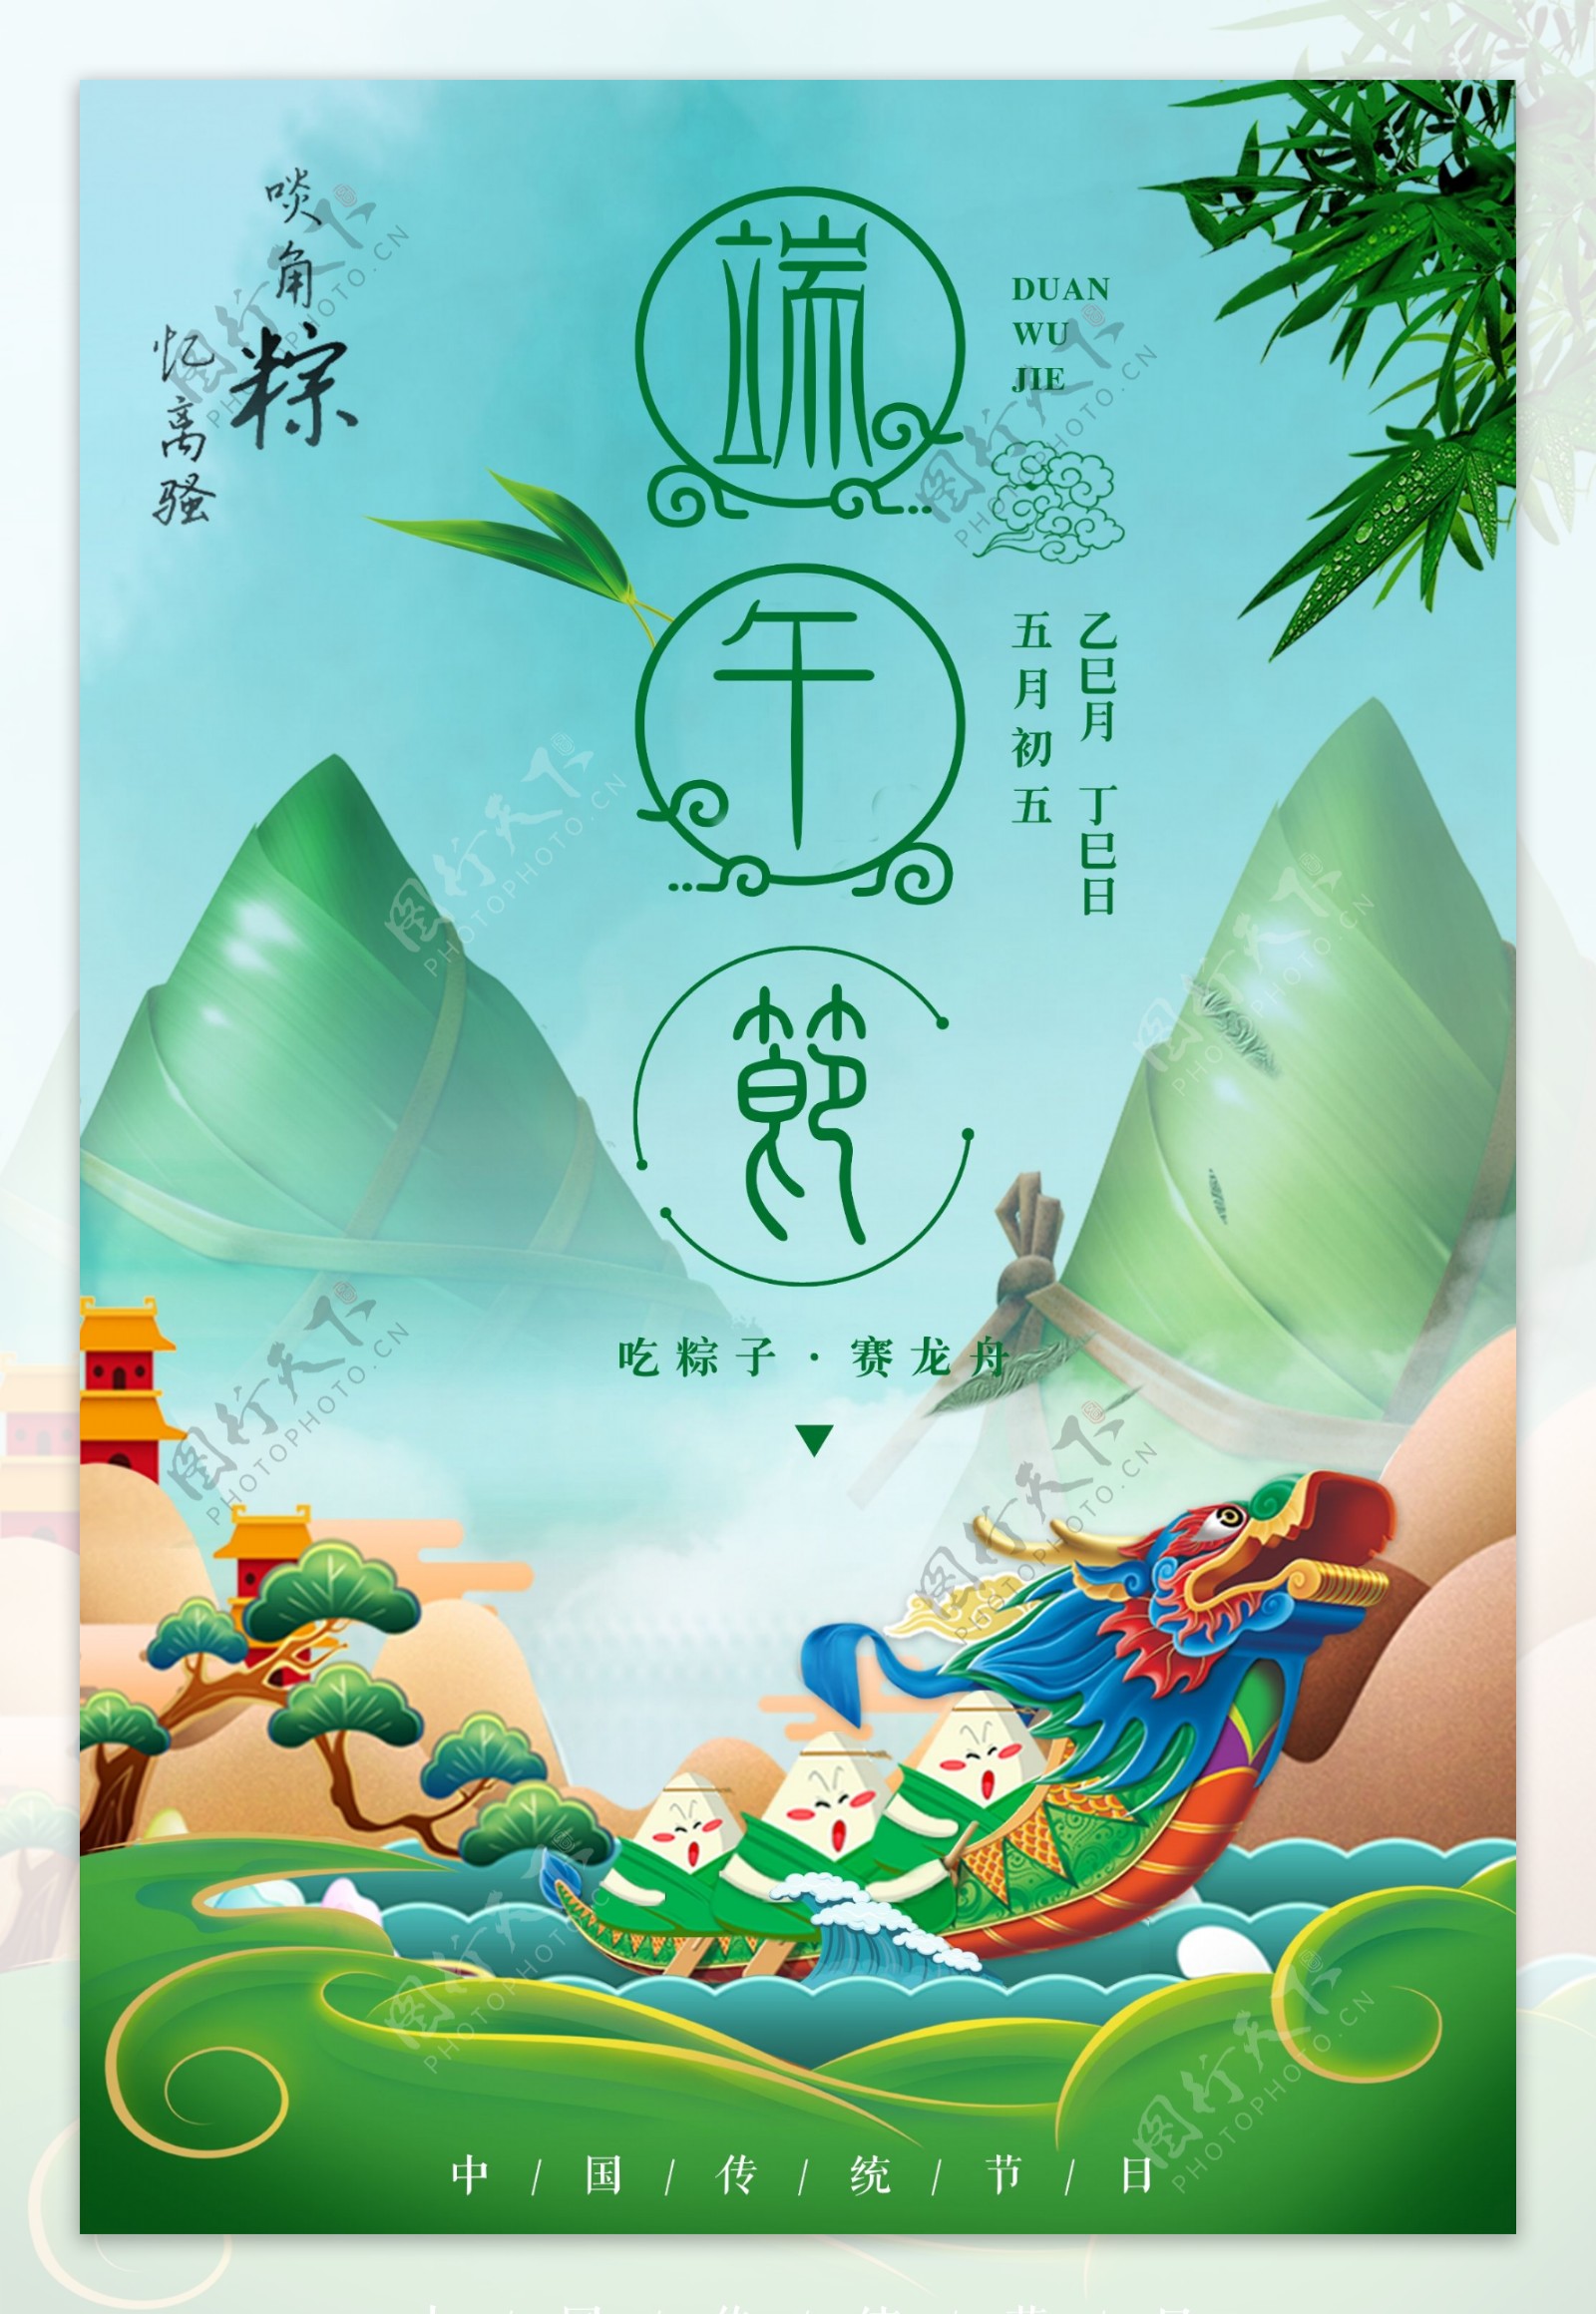 中国传统节日端午节海报下载